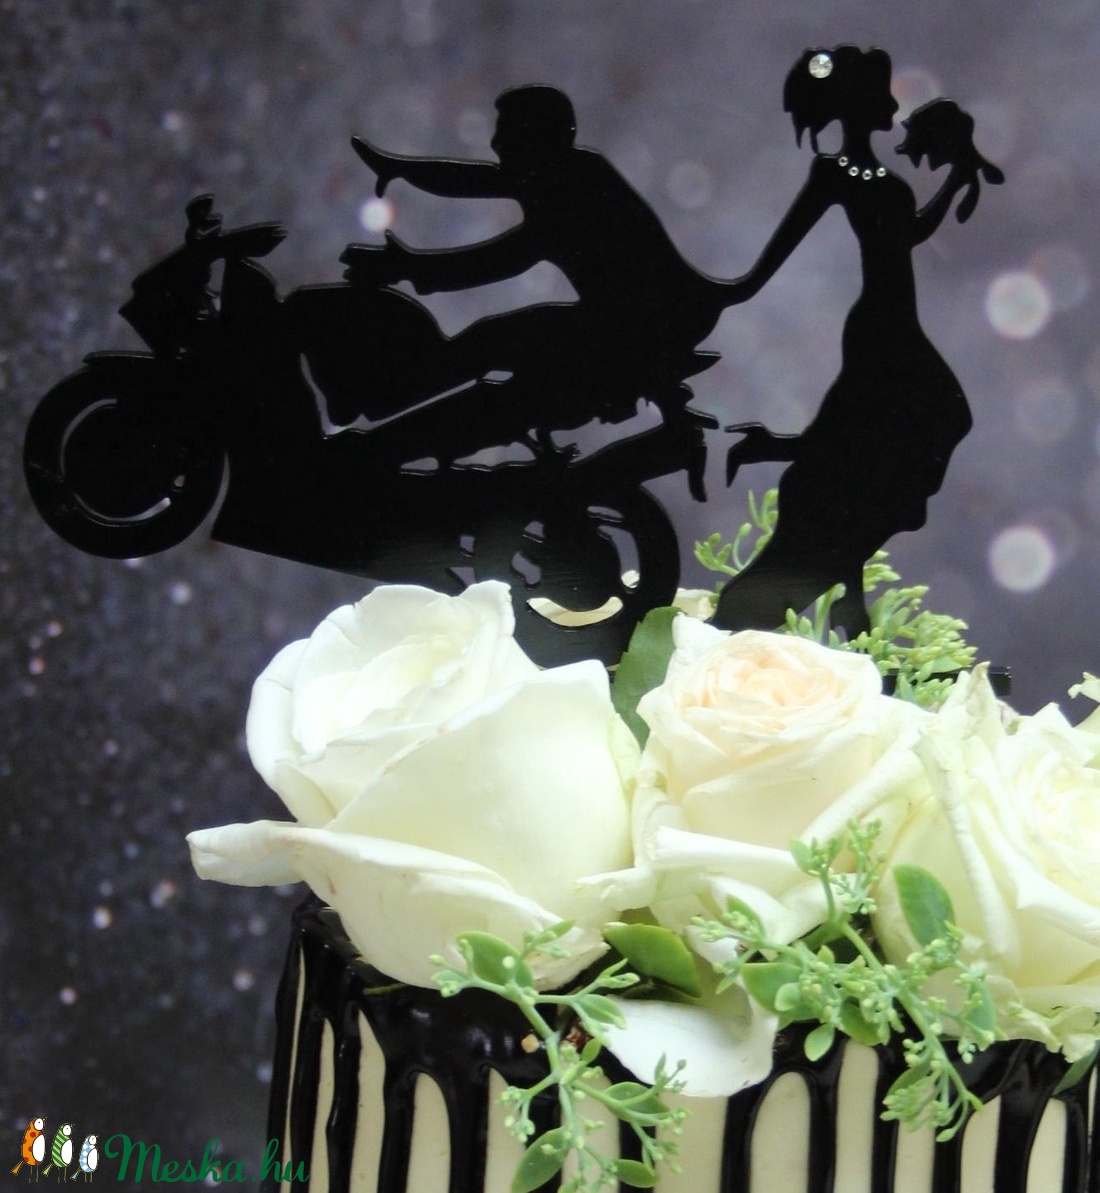 Motoros esküvői tortadísz/csúcsdísz  HONDA Motoros menyasszony és vőlegény Esküvői dekoráció tortára  - esküvő - dekoráció - sütidísz - Meska.hu